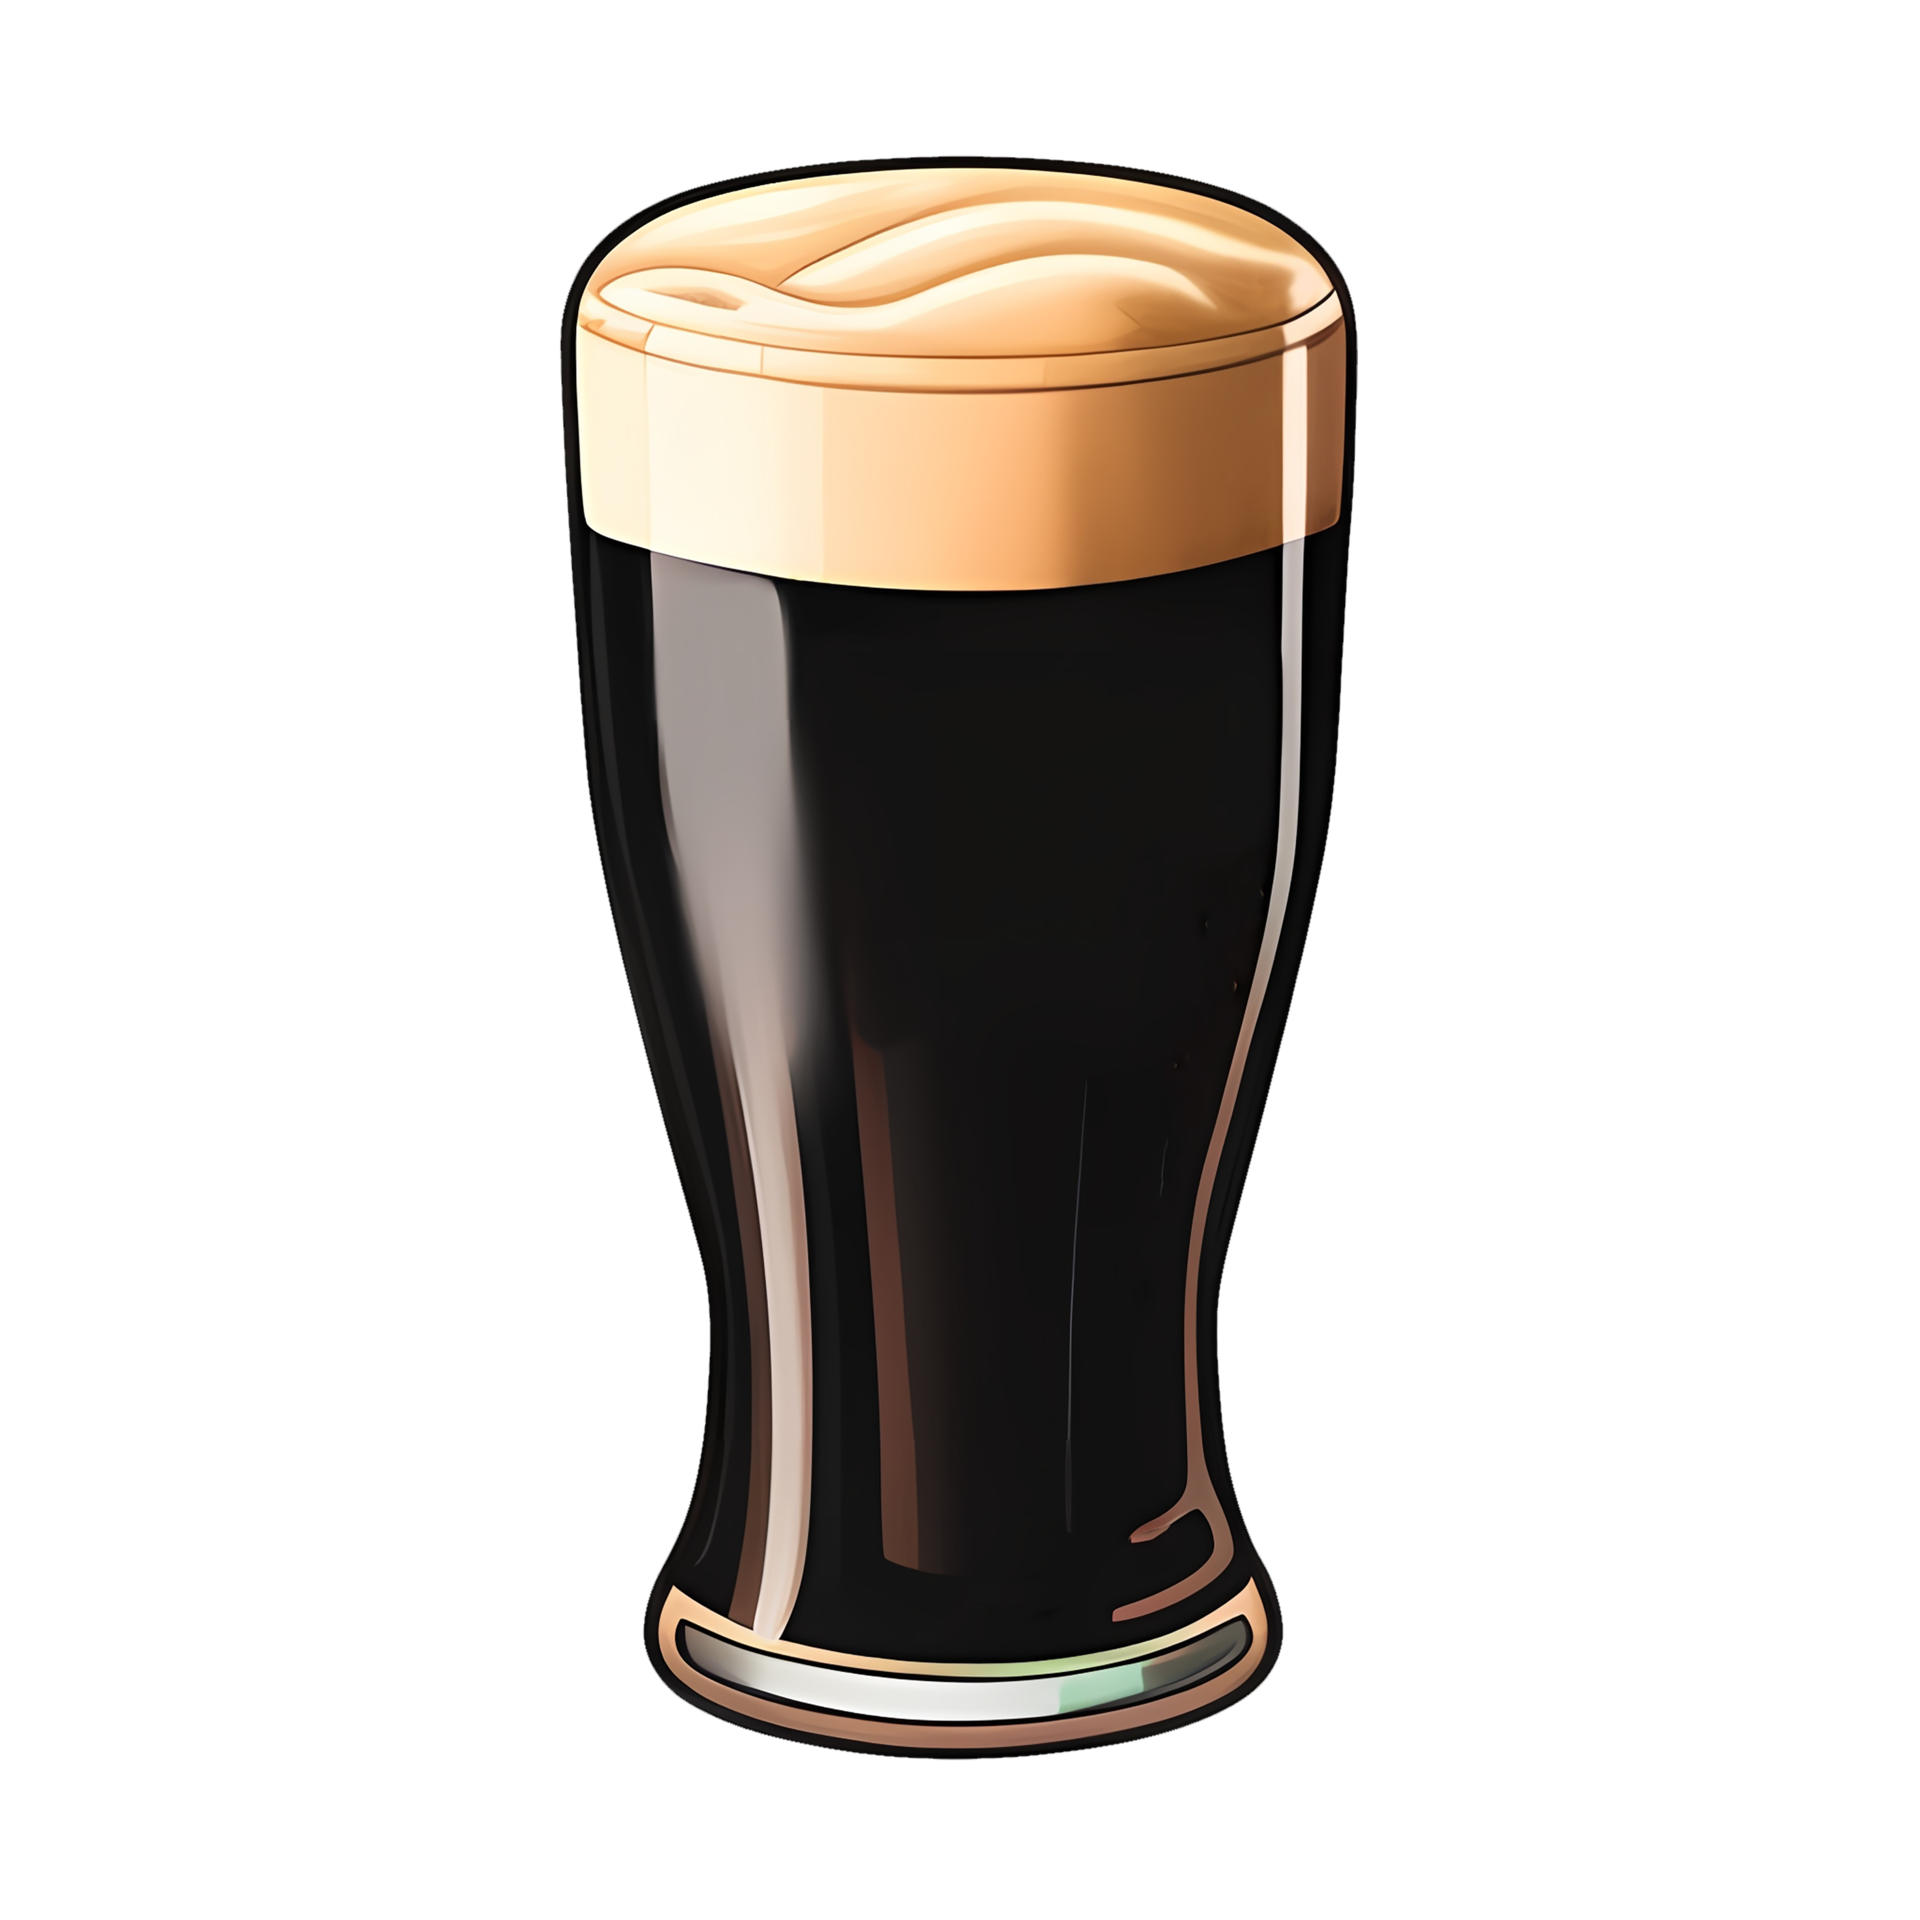 molen Opsplitsen Zin Glass of dark beer, sticker for St. Patrick's Day 18873990 PNG